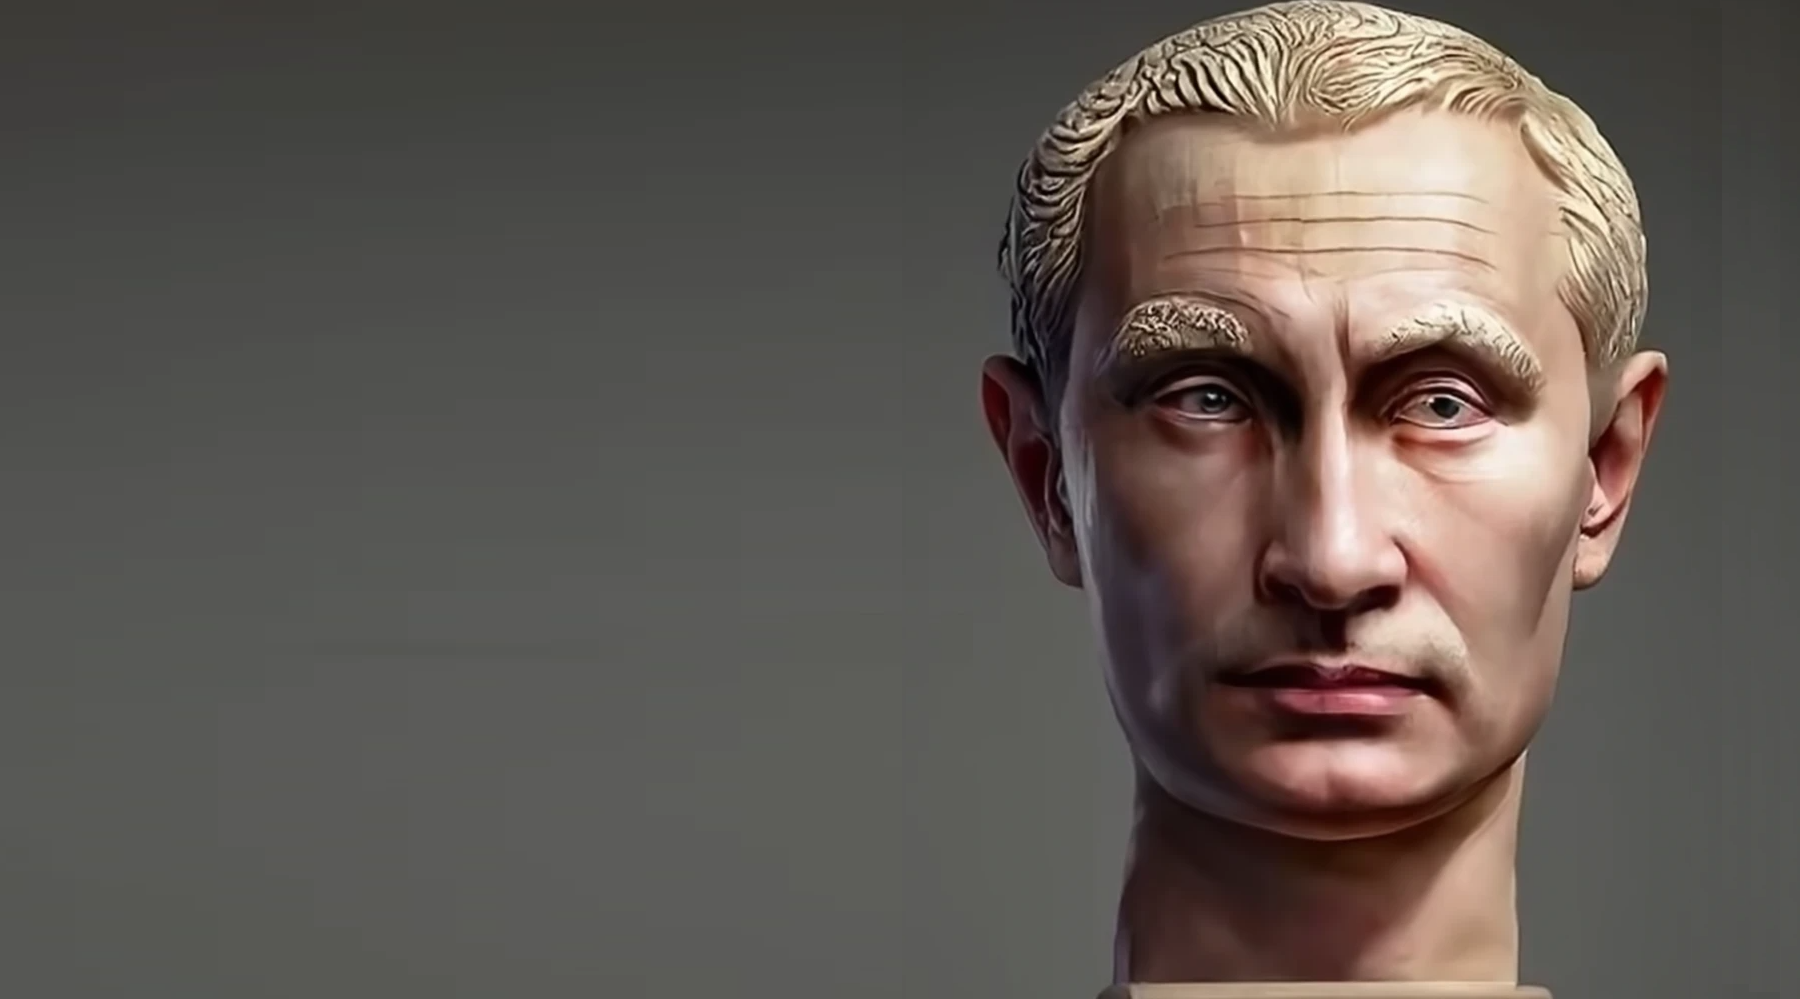 Putin as roman emperor